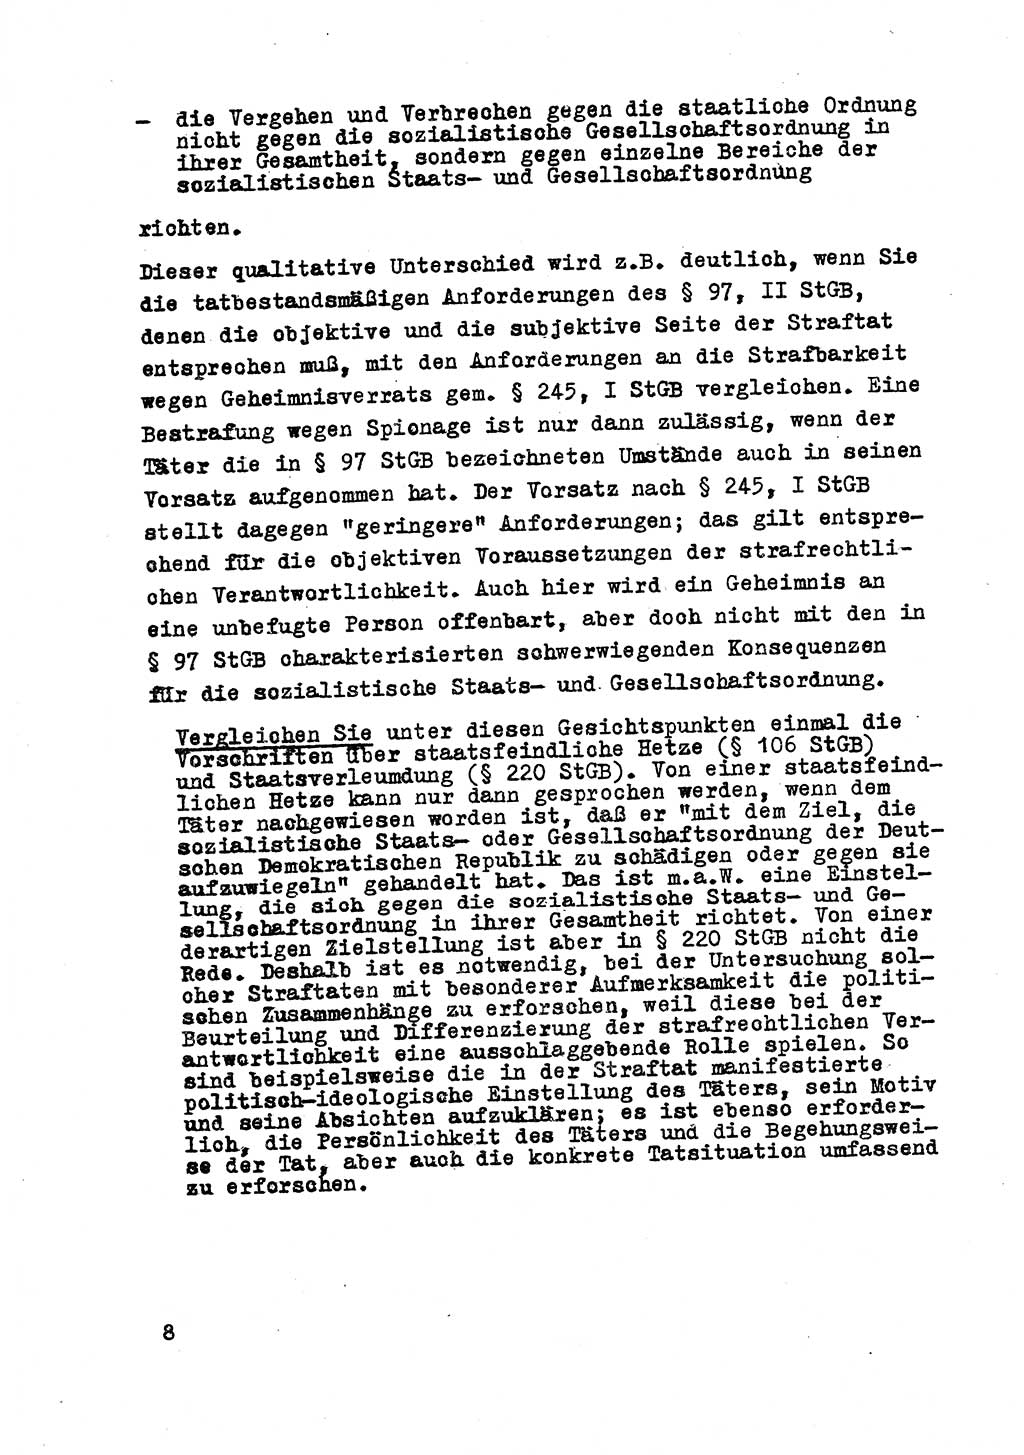 Strafrecht der DDR (Deutsche Demokratische Republik), Besonderer Teil, Lehrmaterial, Heft 8 1970, Seite 8 (Strafr. DDR BT Lehrmat. H. 8 1970, S. 8)